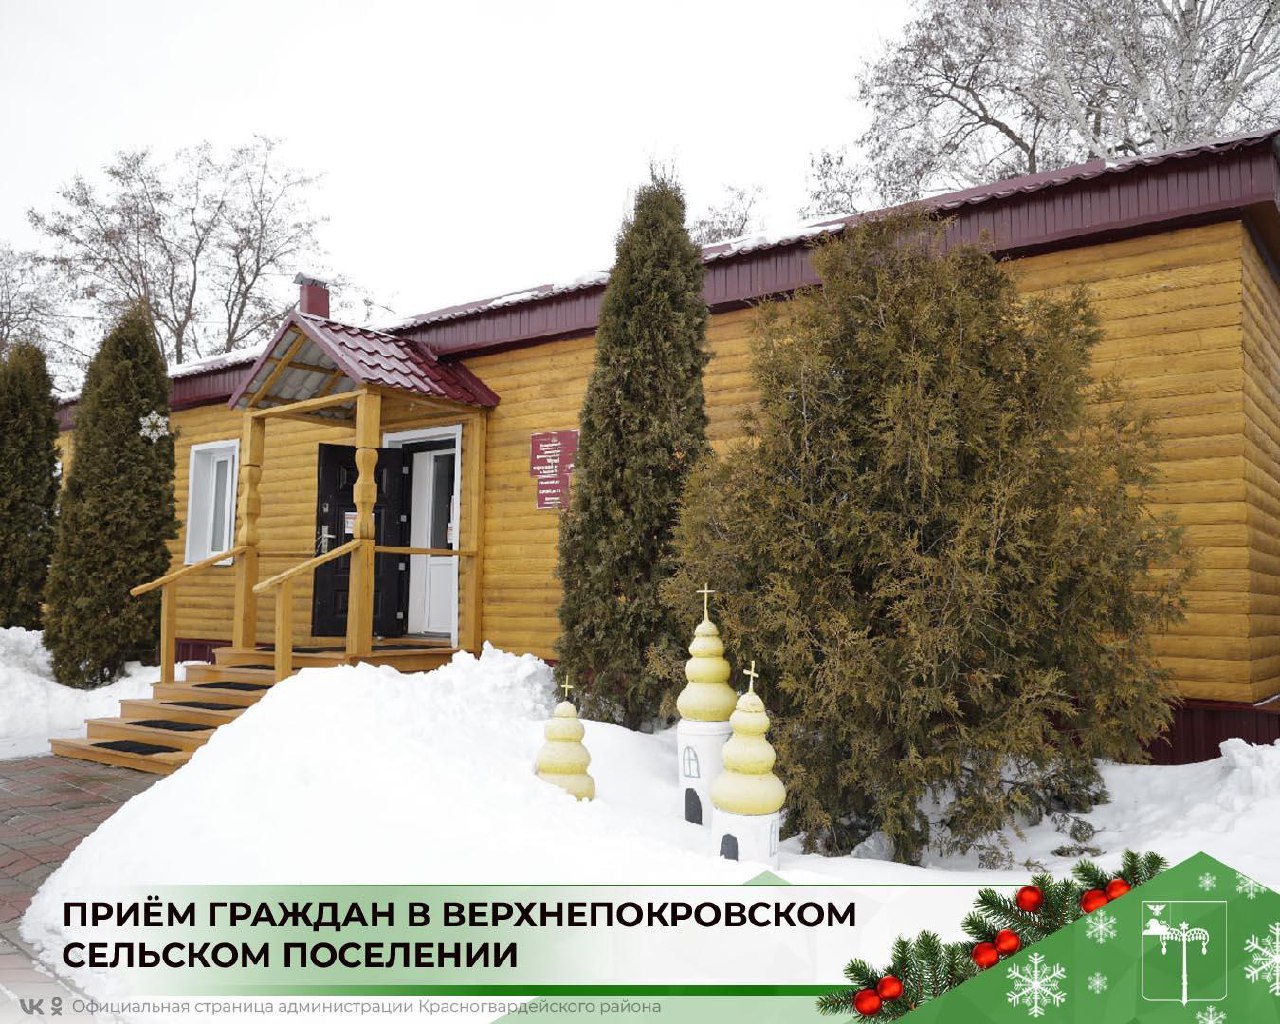 13 декабря состоится приём граждан в Верхнепокровском сельском поселении.